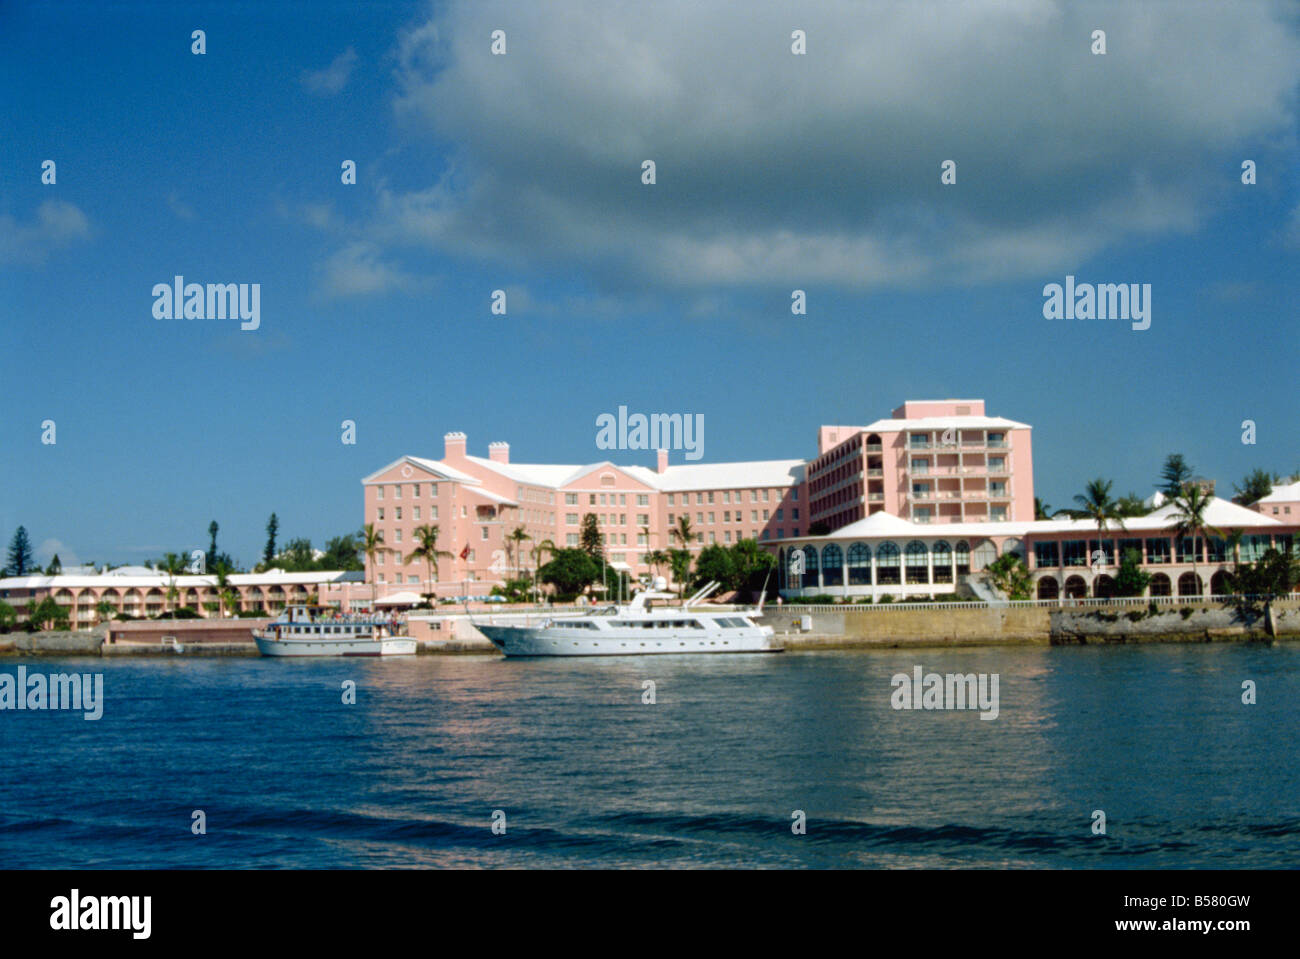 Hôtel Hamilton Bermudes Océan Atlantique Amérique Centrale Banque D'Images